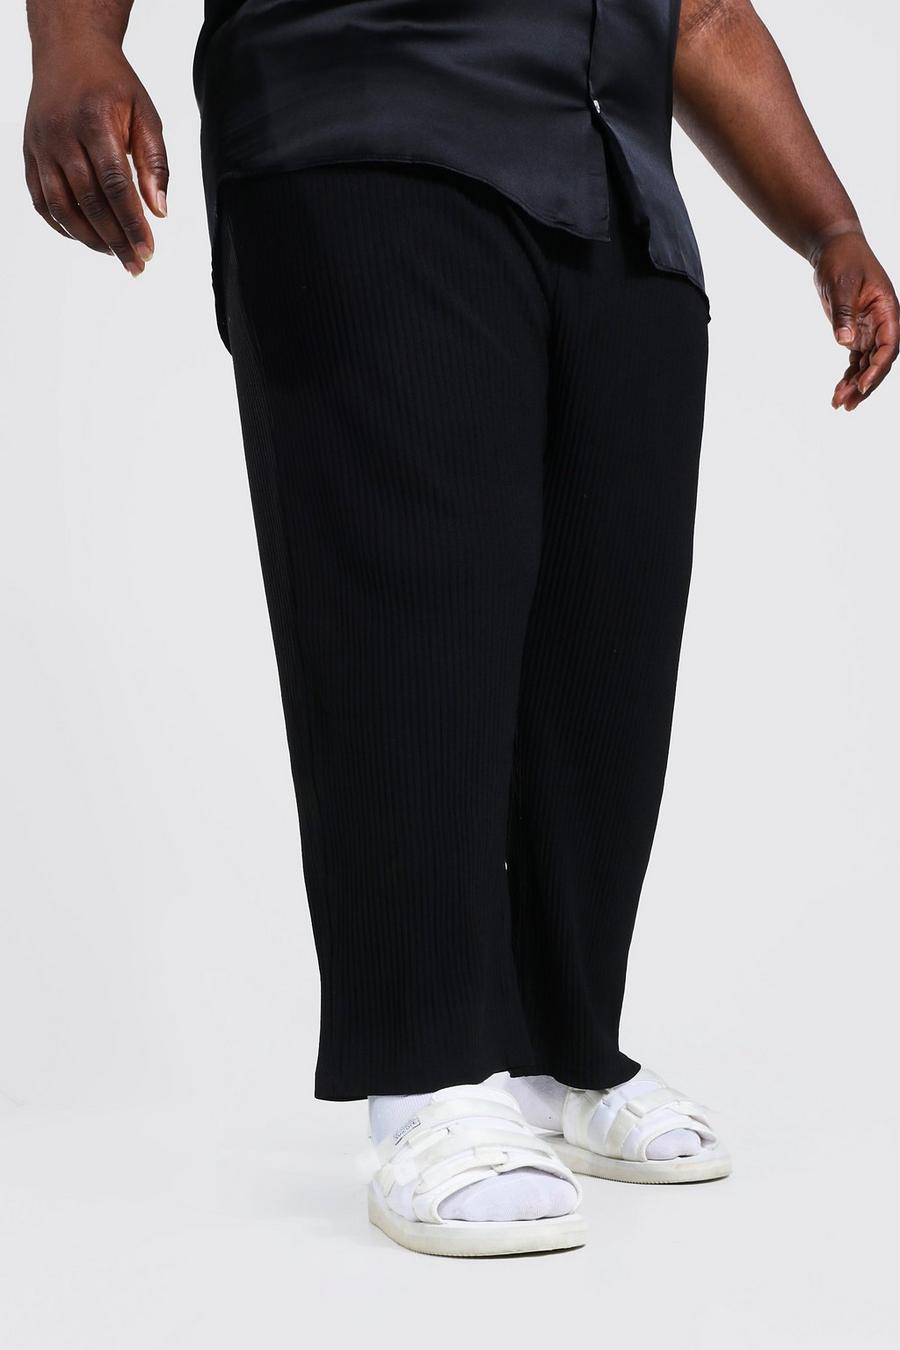 Pantalones Plus ajustados plisados, Black negro image number 1